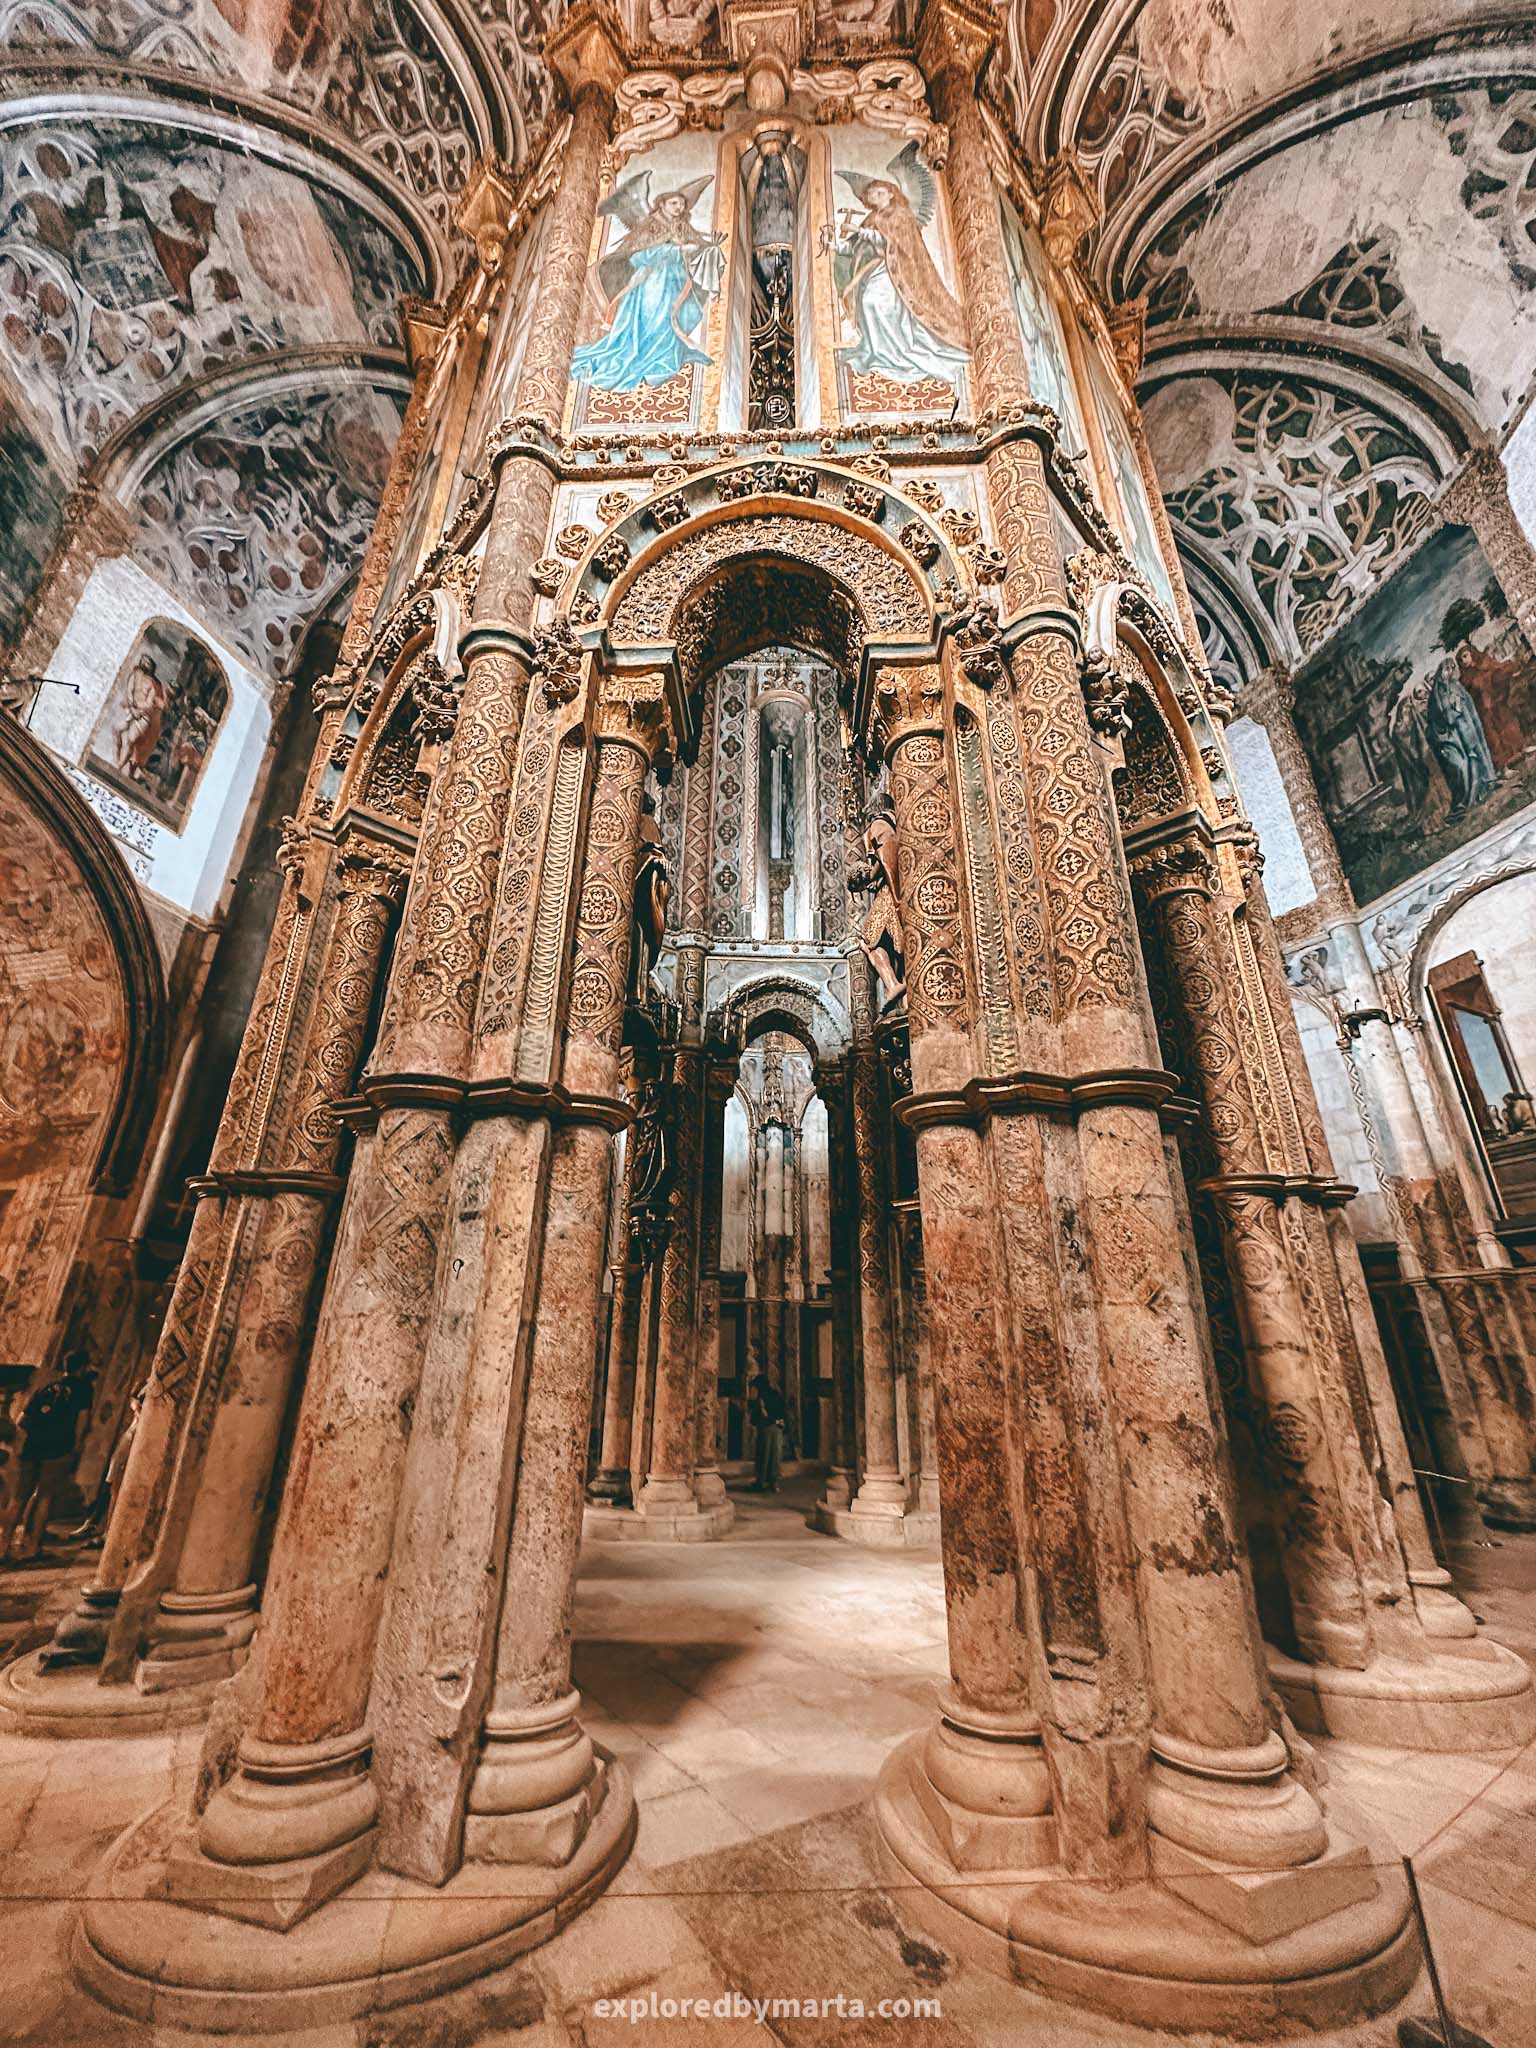 Convento de Cristo in Tomar, Portugal